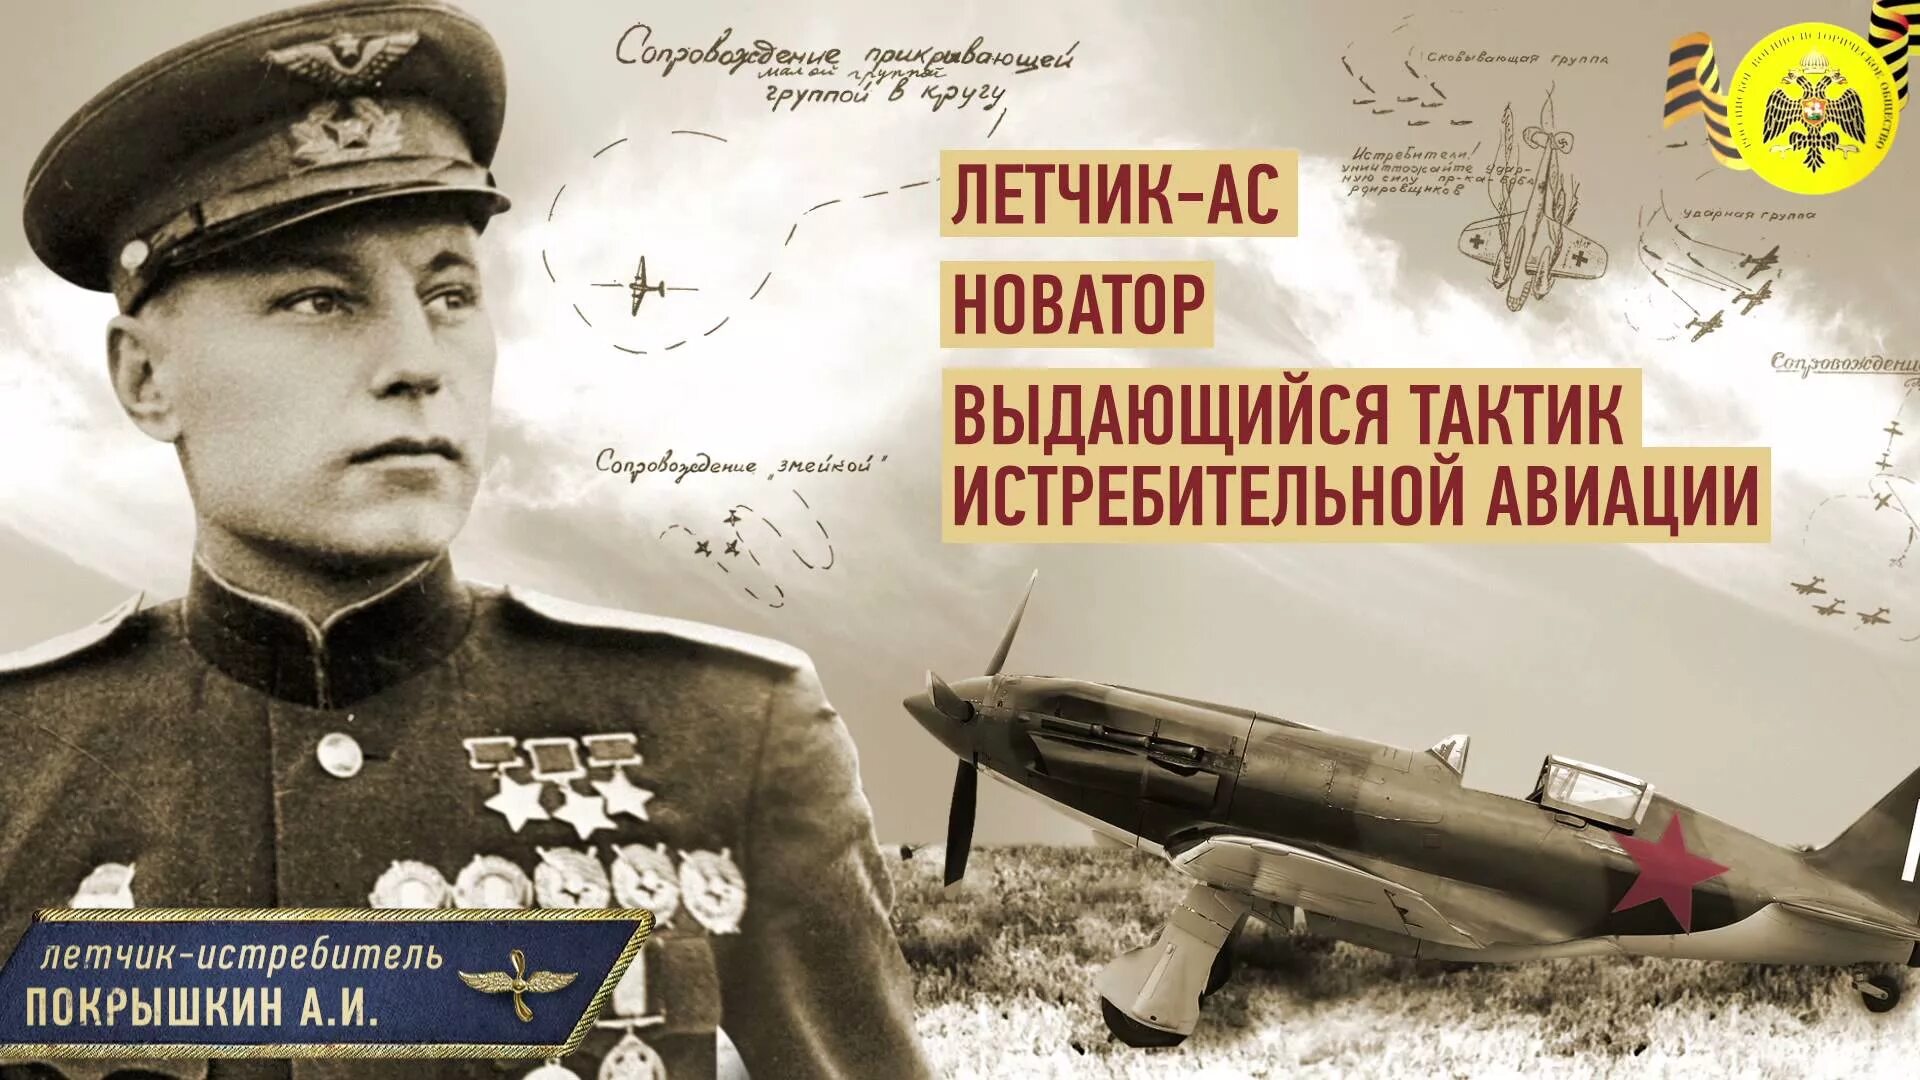 1913 - Родился лётчик-истребитель а. и. Покрышкин. Трижды герой СССР А.И. Покрышкин. Многим летчикам великой